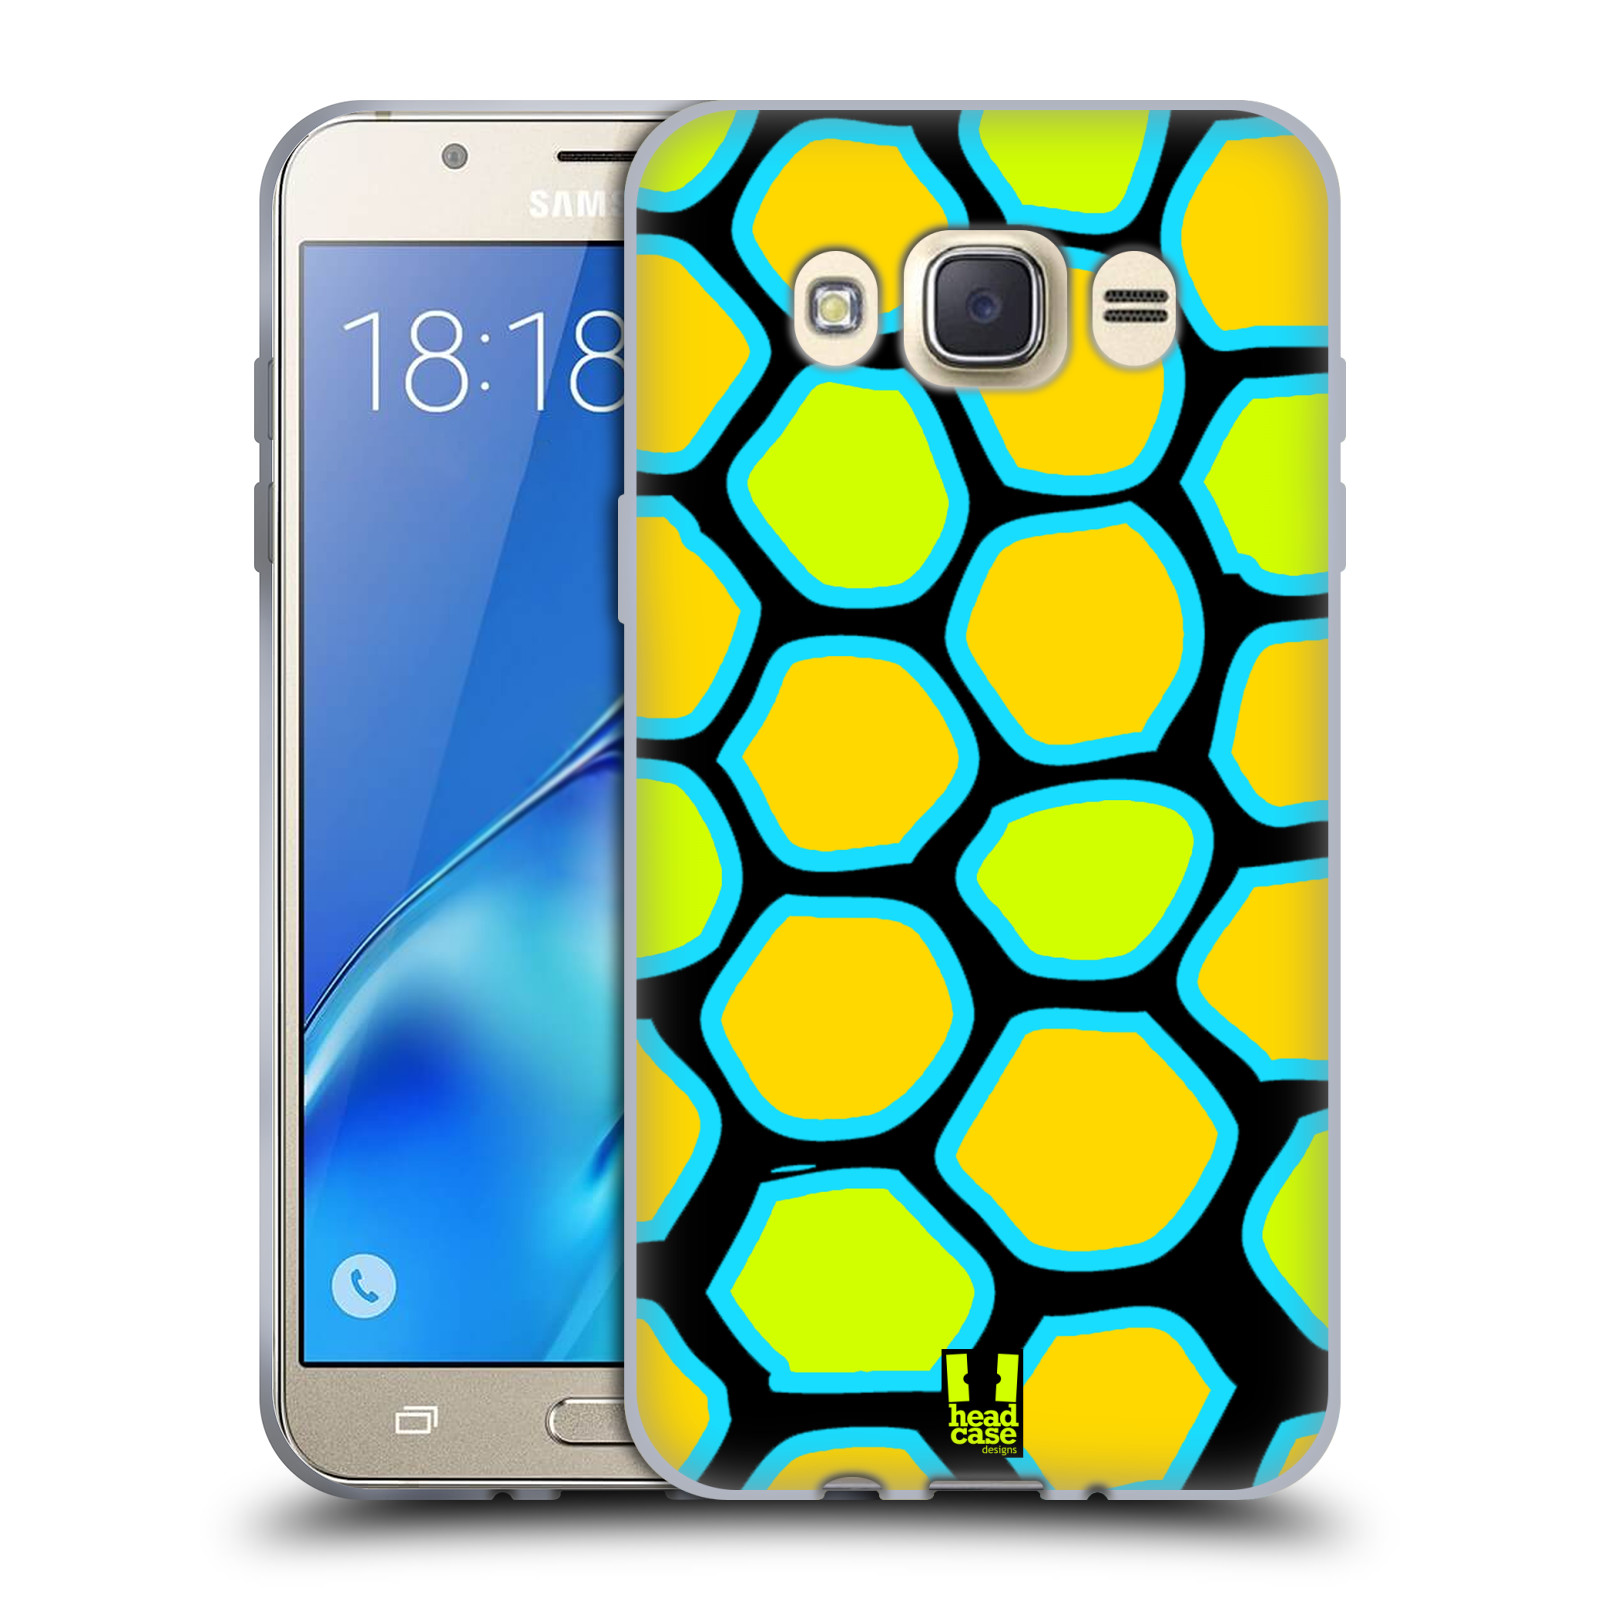 HEAD CASE silikonový obal, kryt na mobil Samsung Galaxy J7 2016 (J710, J710F) vzor Divočina zvíře žlutý had